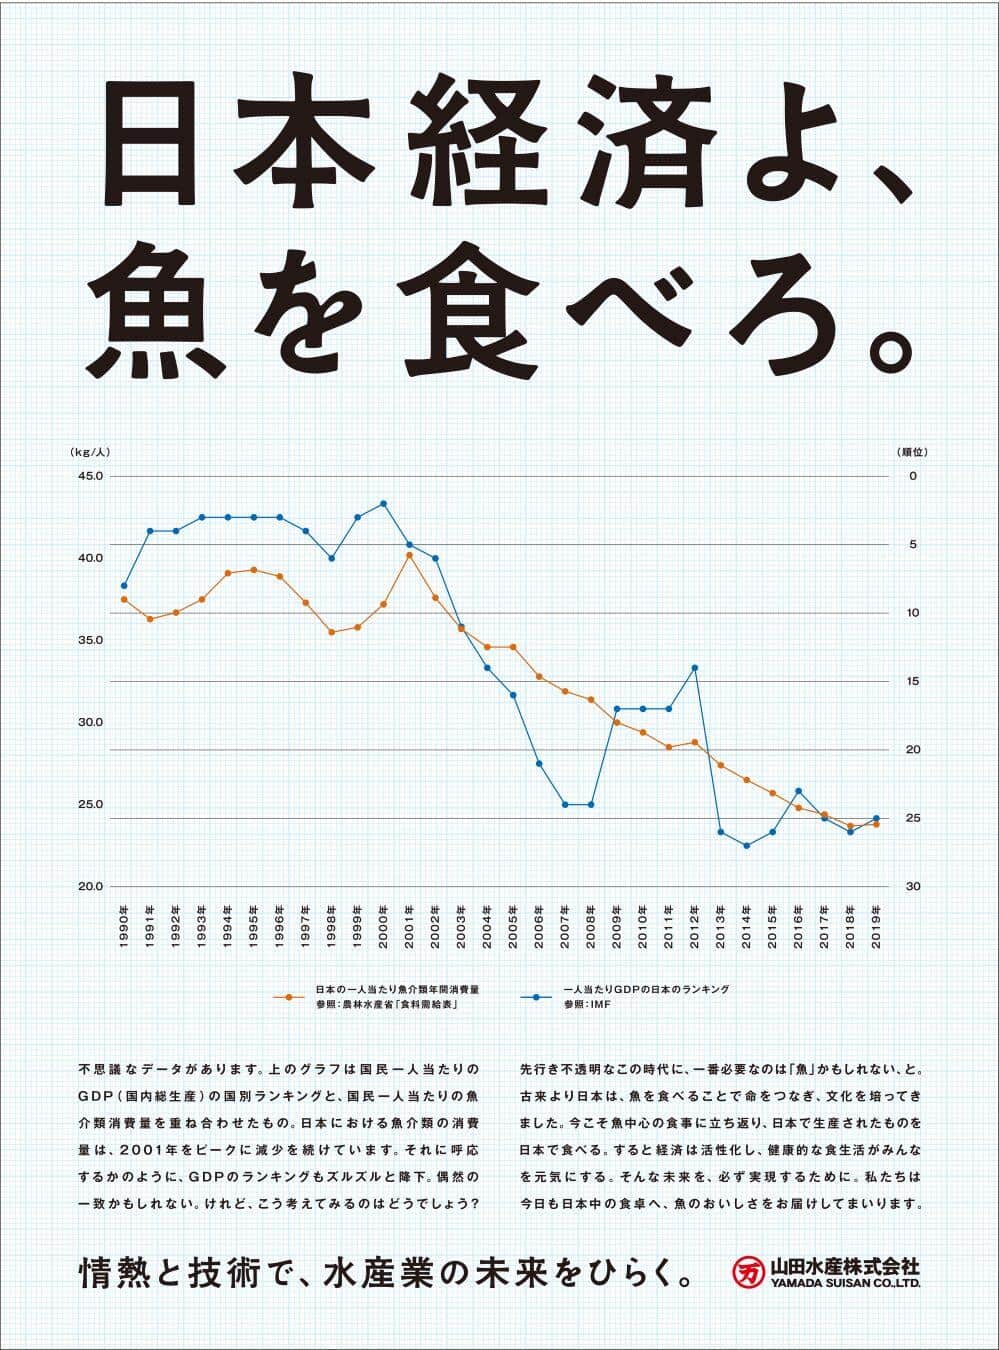 「日本経済よ、魚を食べろ。」　日経の全面広告に込められた2代目社長の「水産業への情熱」